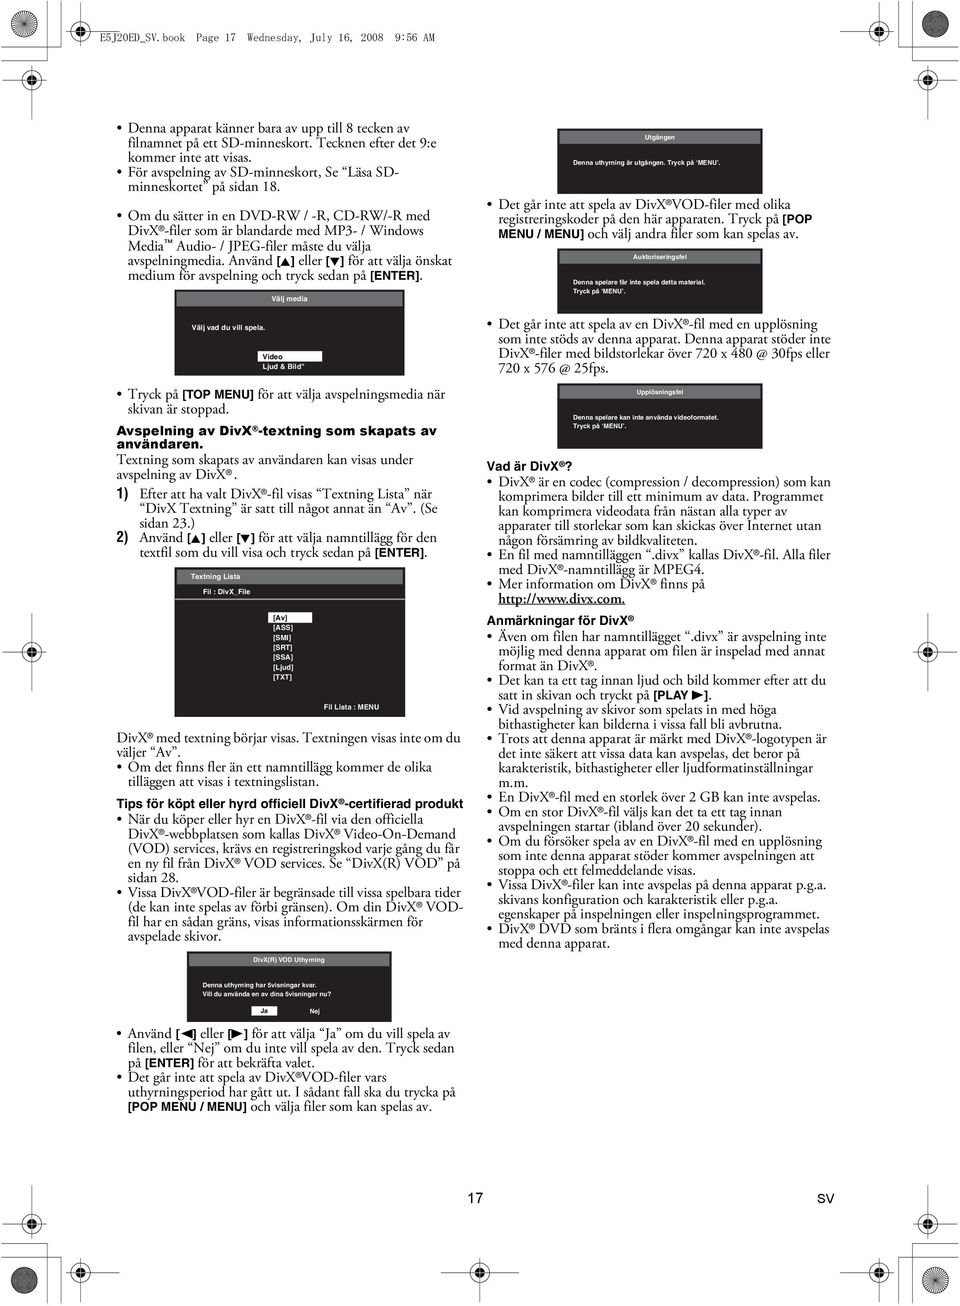 Om du sätter in en DVD-RW / -R, CD-RW/-R med DivX -filer som är blandarde med MP3- / Windows Media Audio- / JPEG-filer måste du välja avspelningmedia.